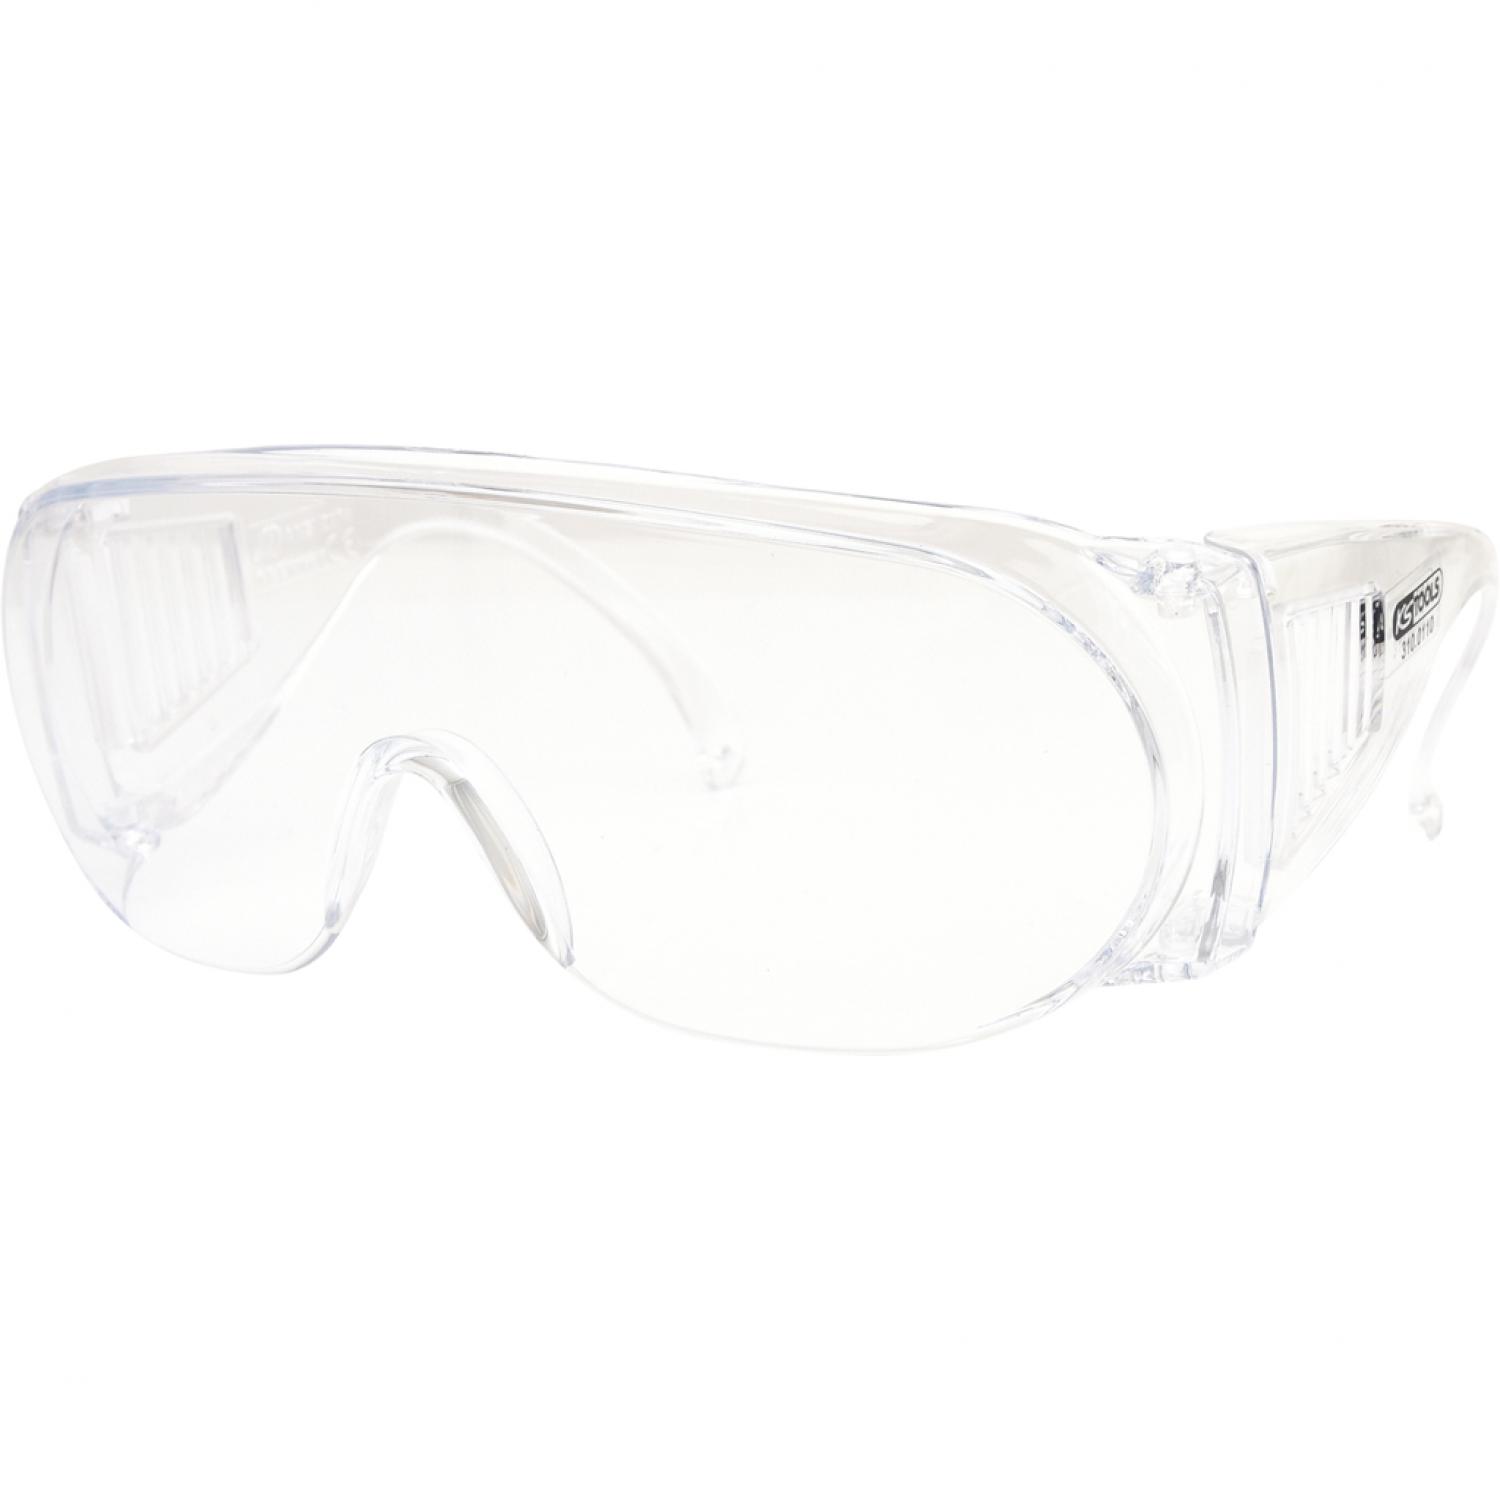 Защитные очки с прозрачными стеклами